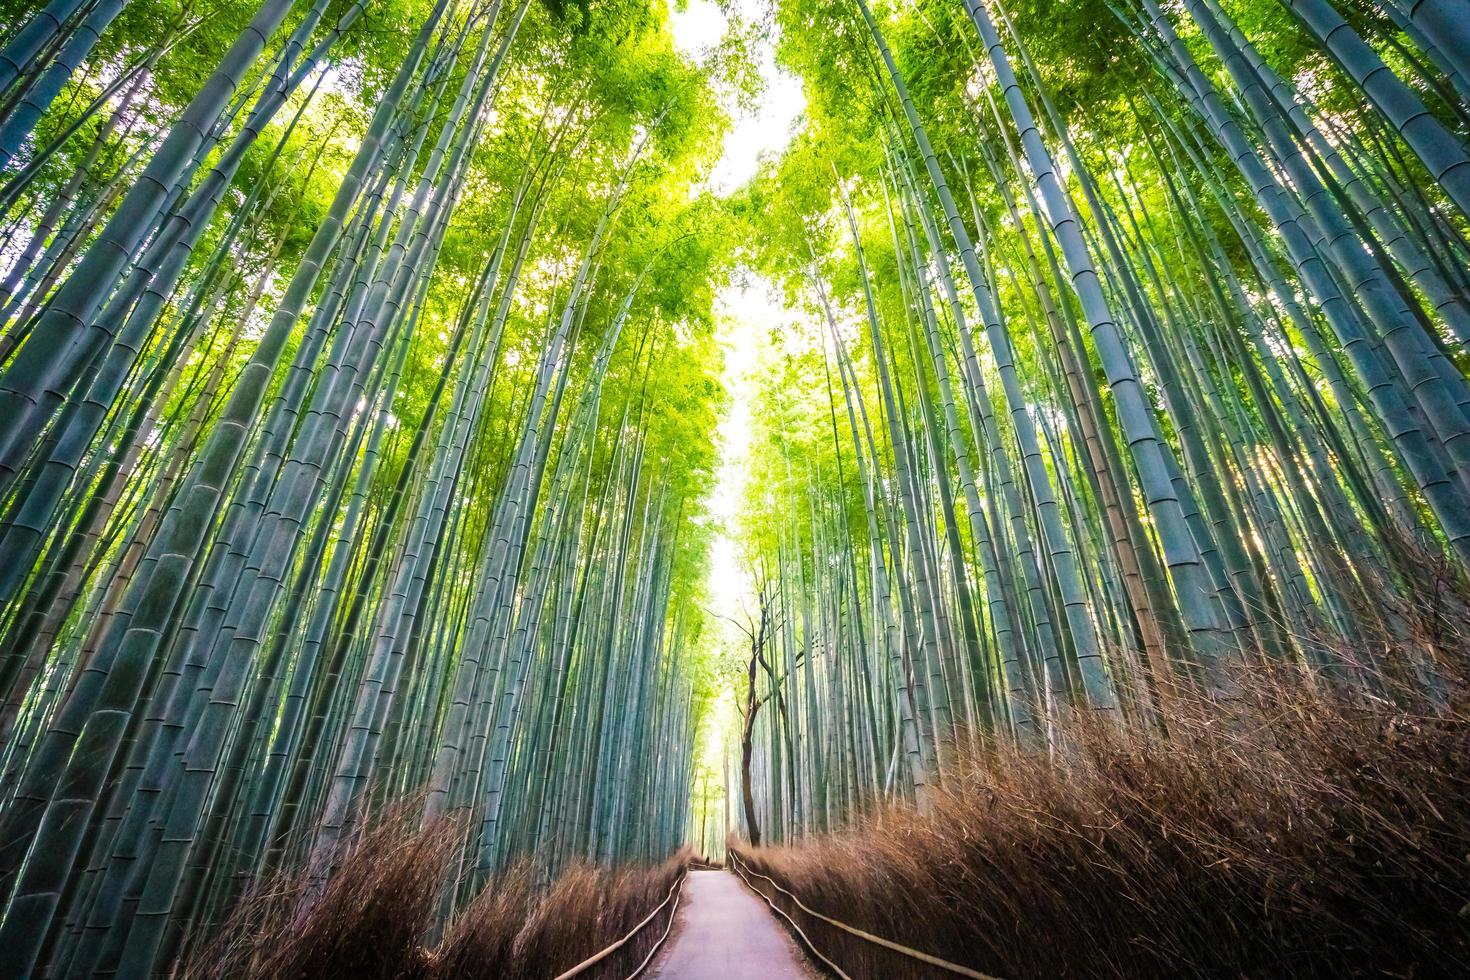 prachtig bamboebos in arashiyama, kyoto foto